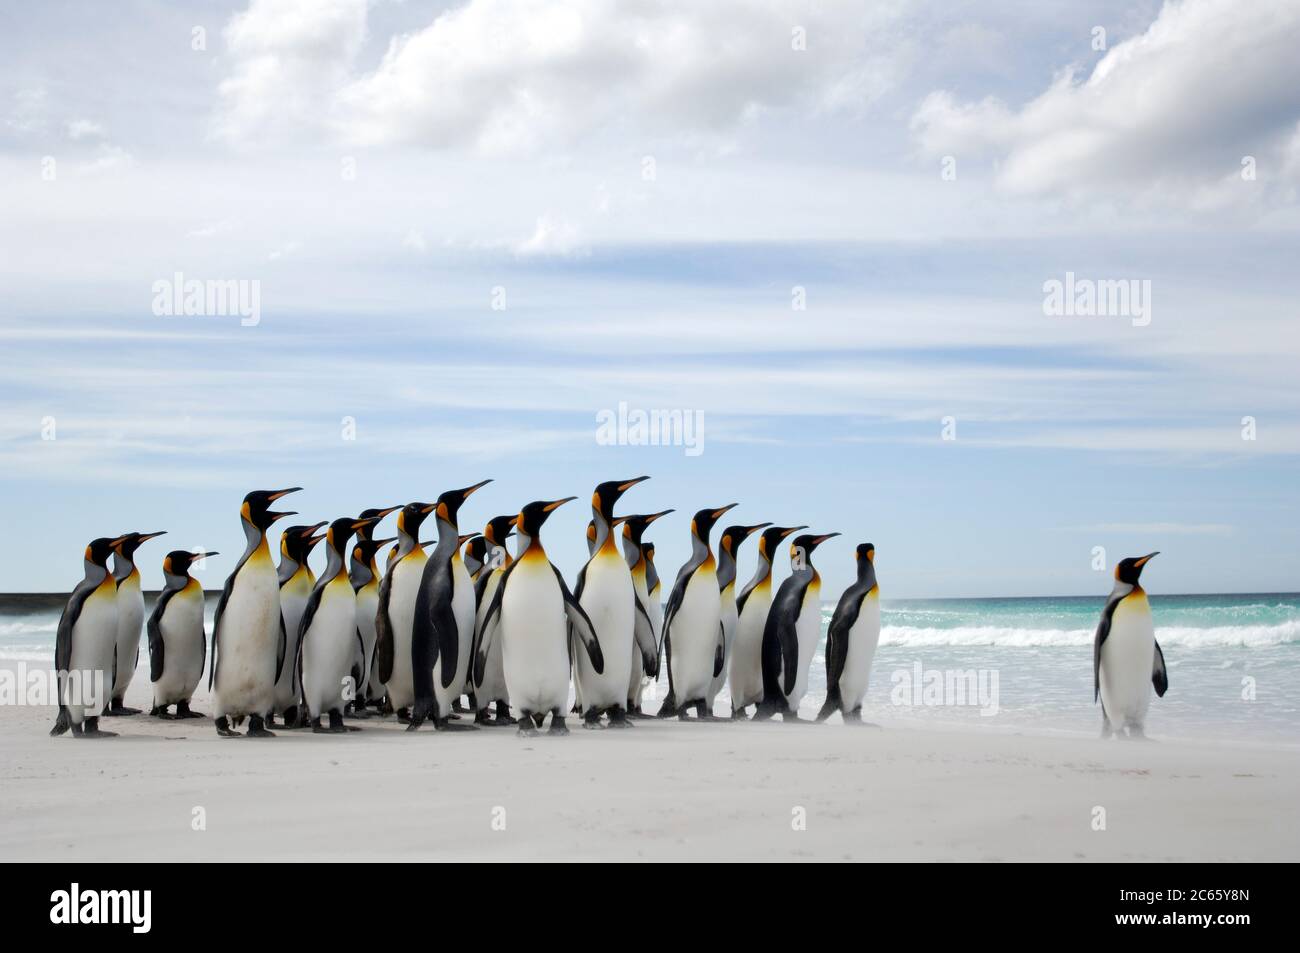 Les pingouins (Aptenodytes patagonicus) se rassemblent souvent en groupes. Cette habitude peut réduire le risque d'être pris par leurs prédateurs aquatiques, par exemple le lion de mer et l'orque. Banque D'Images